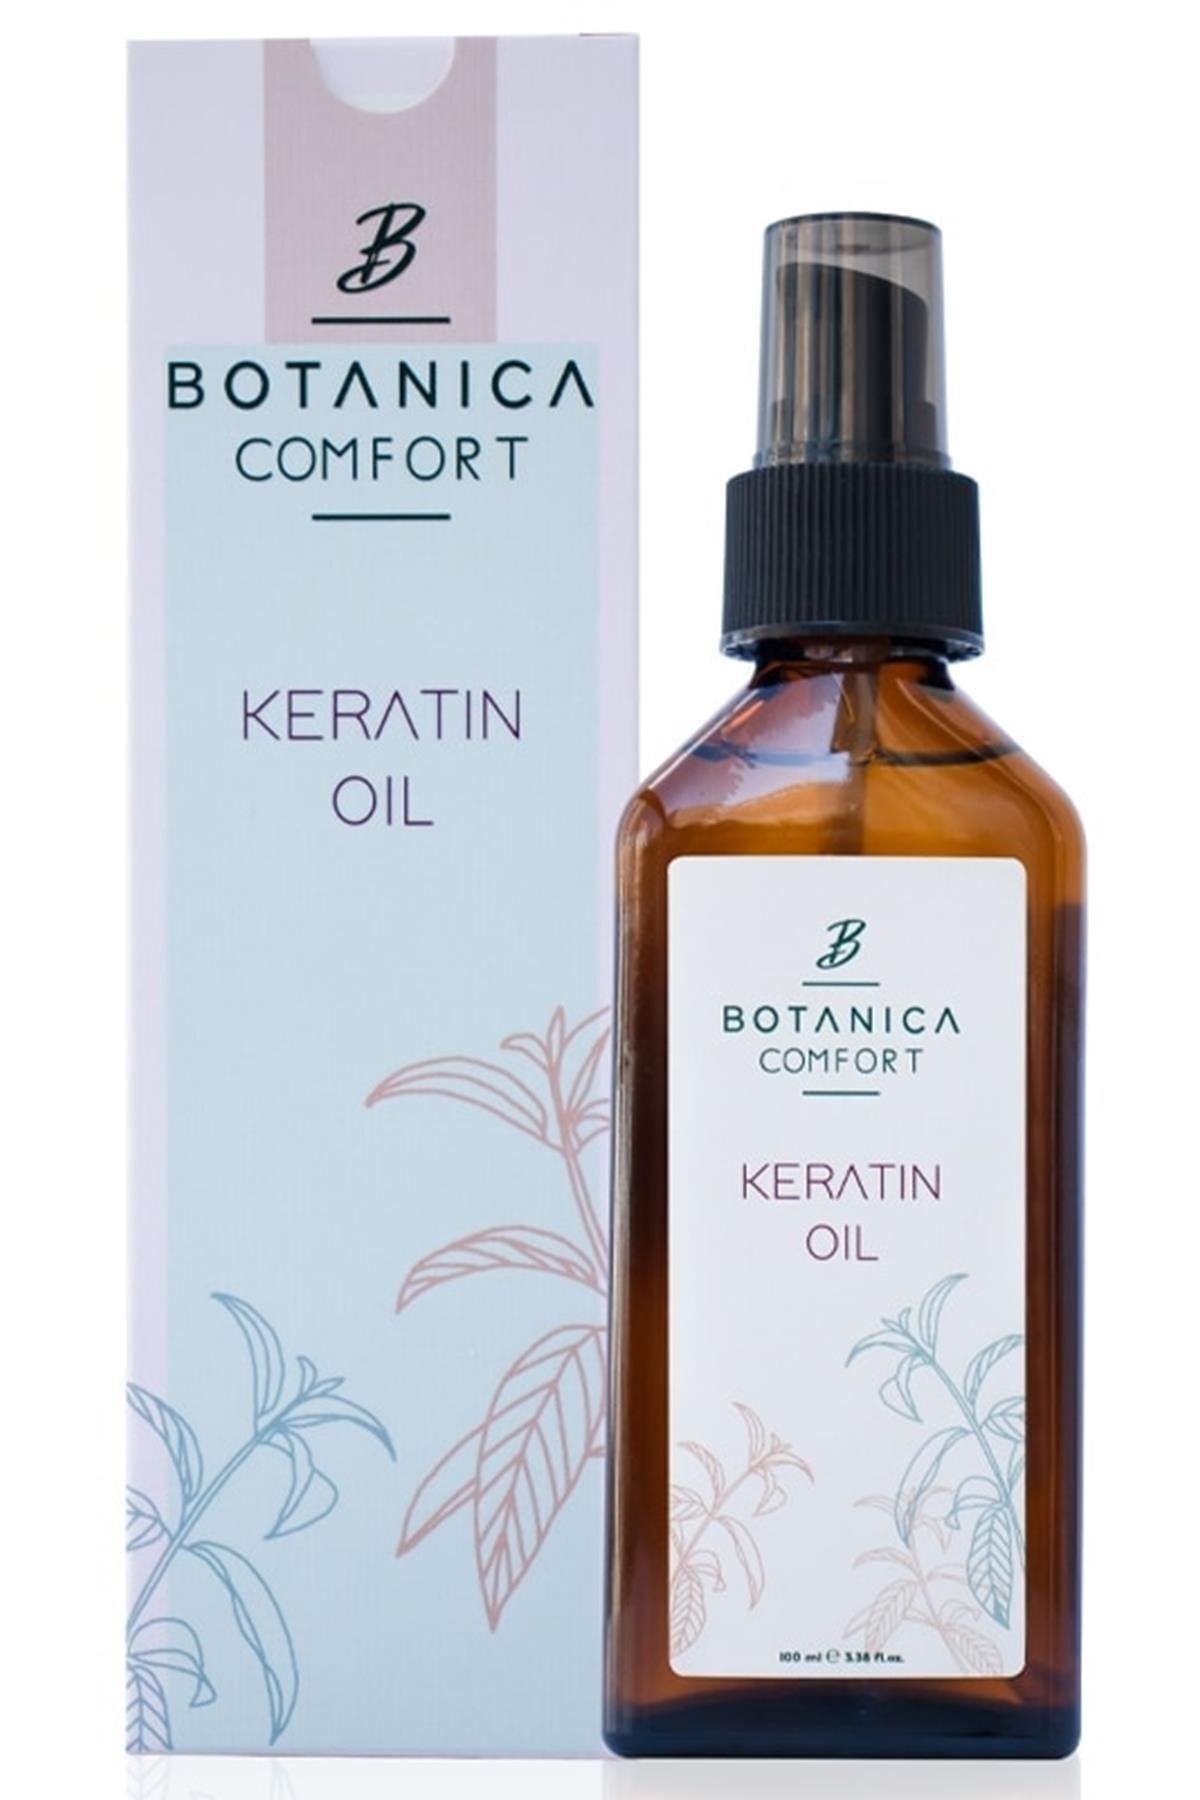 botanica Comfort Keratin Saç Bakım Yağı 100 Ml